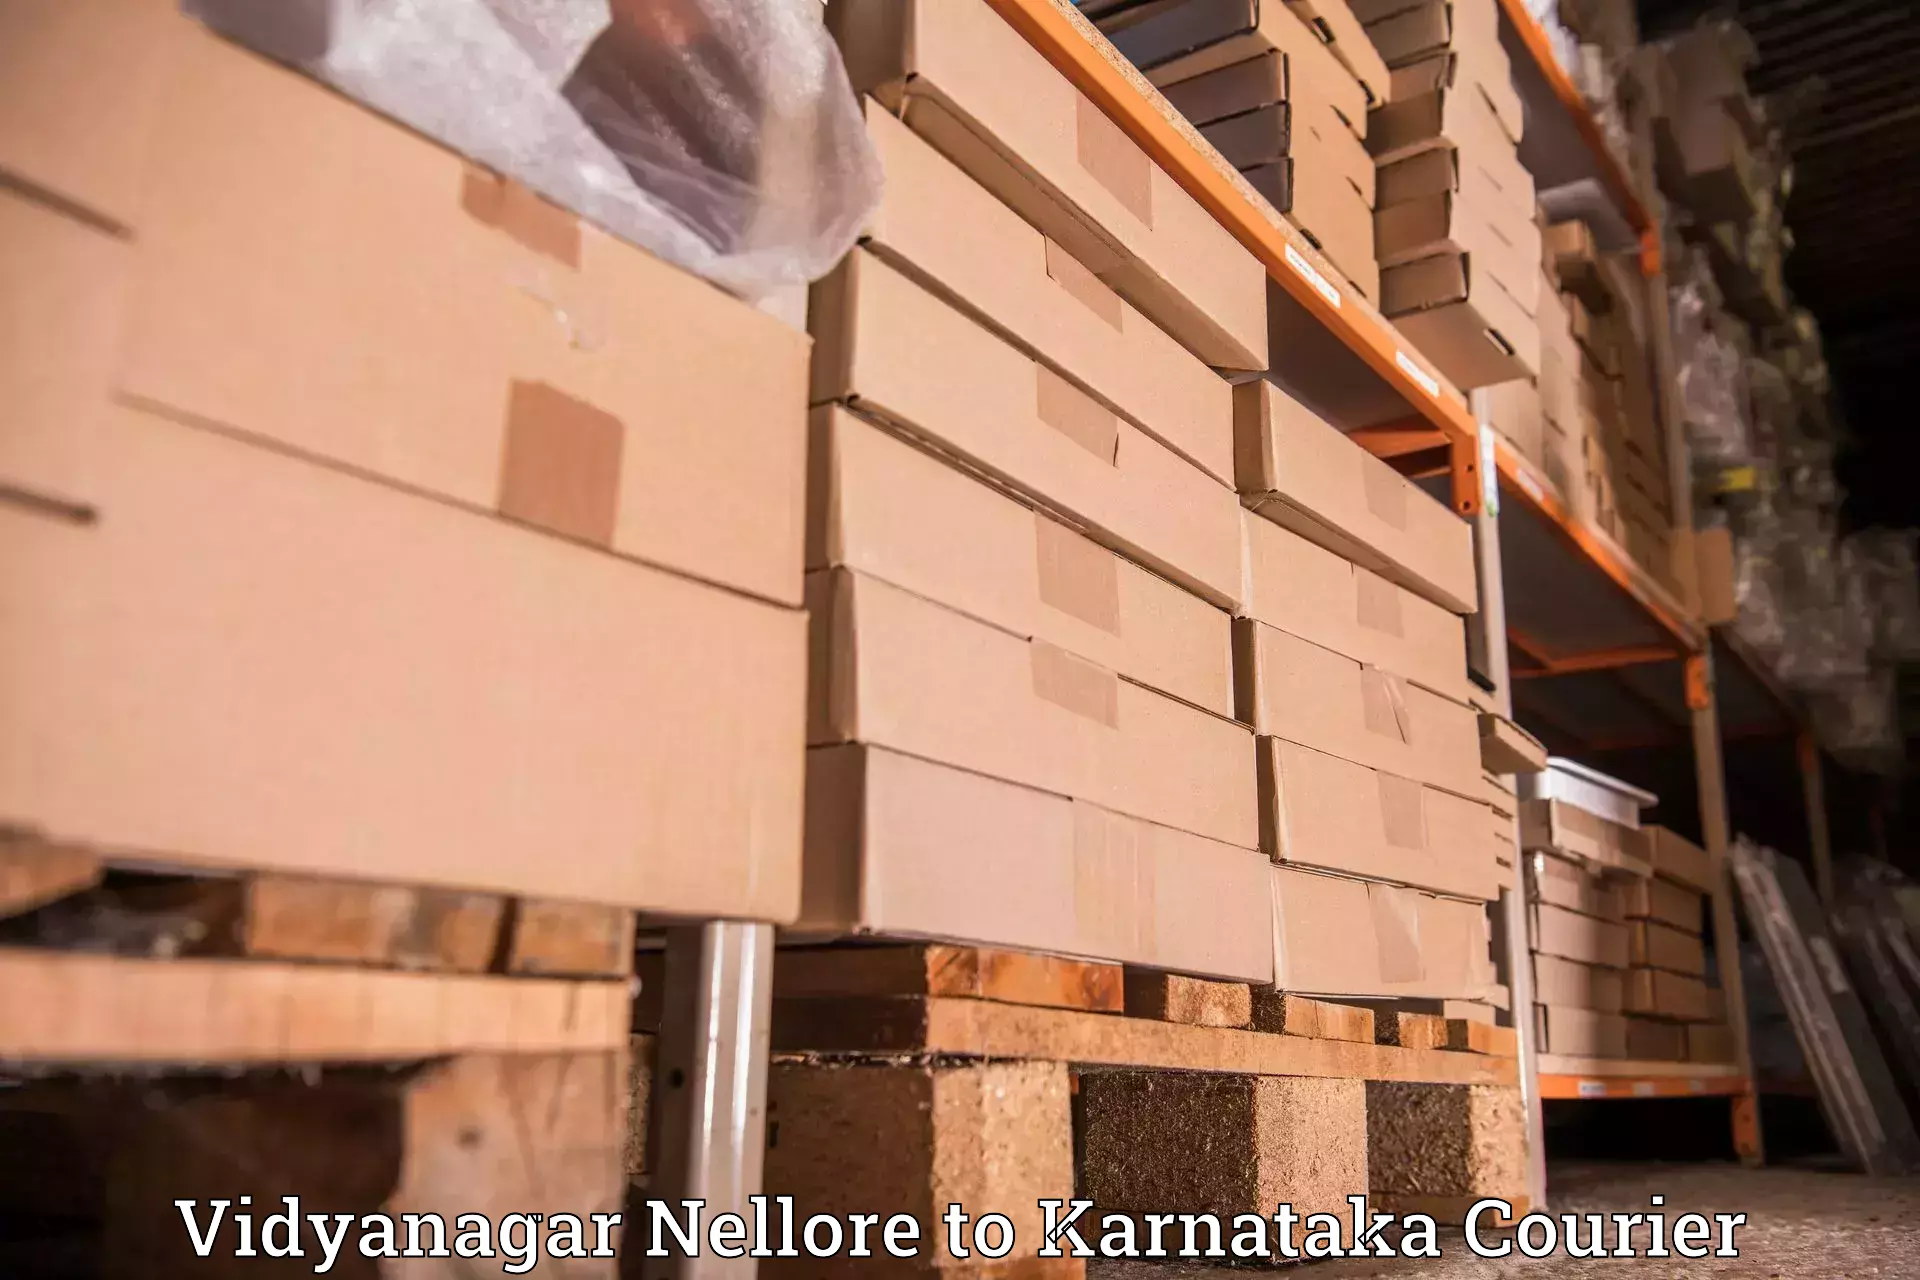 Reliable logistics providers Vidyanagar Nellore to Turuvekere